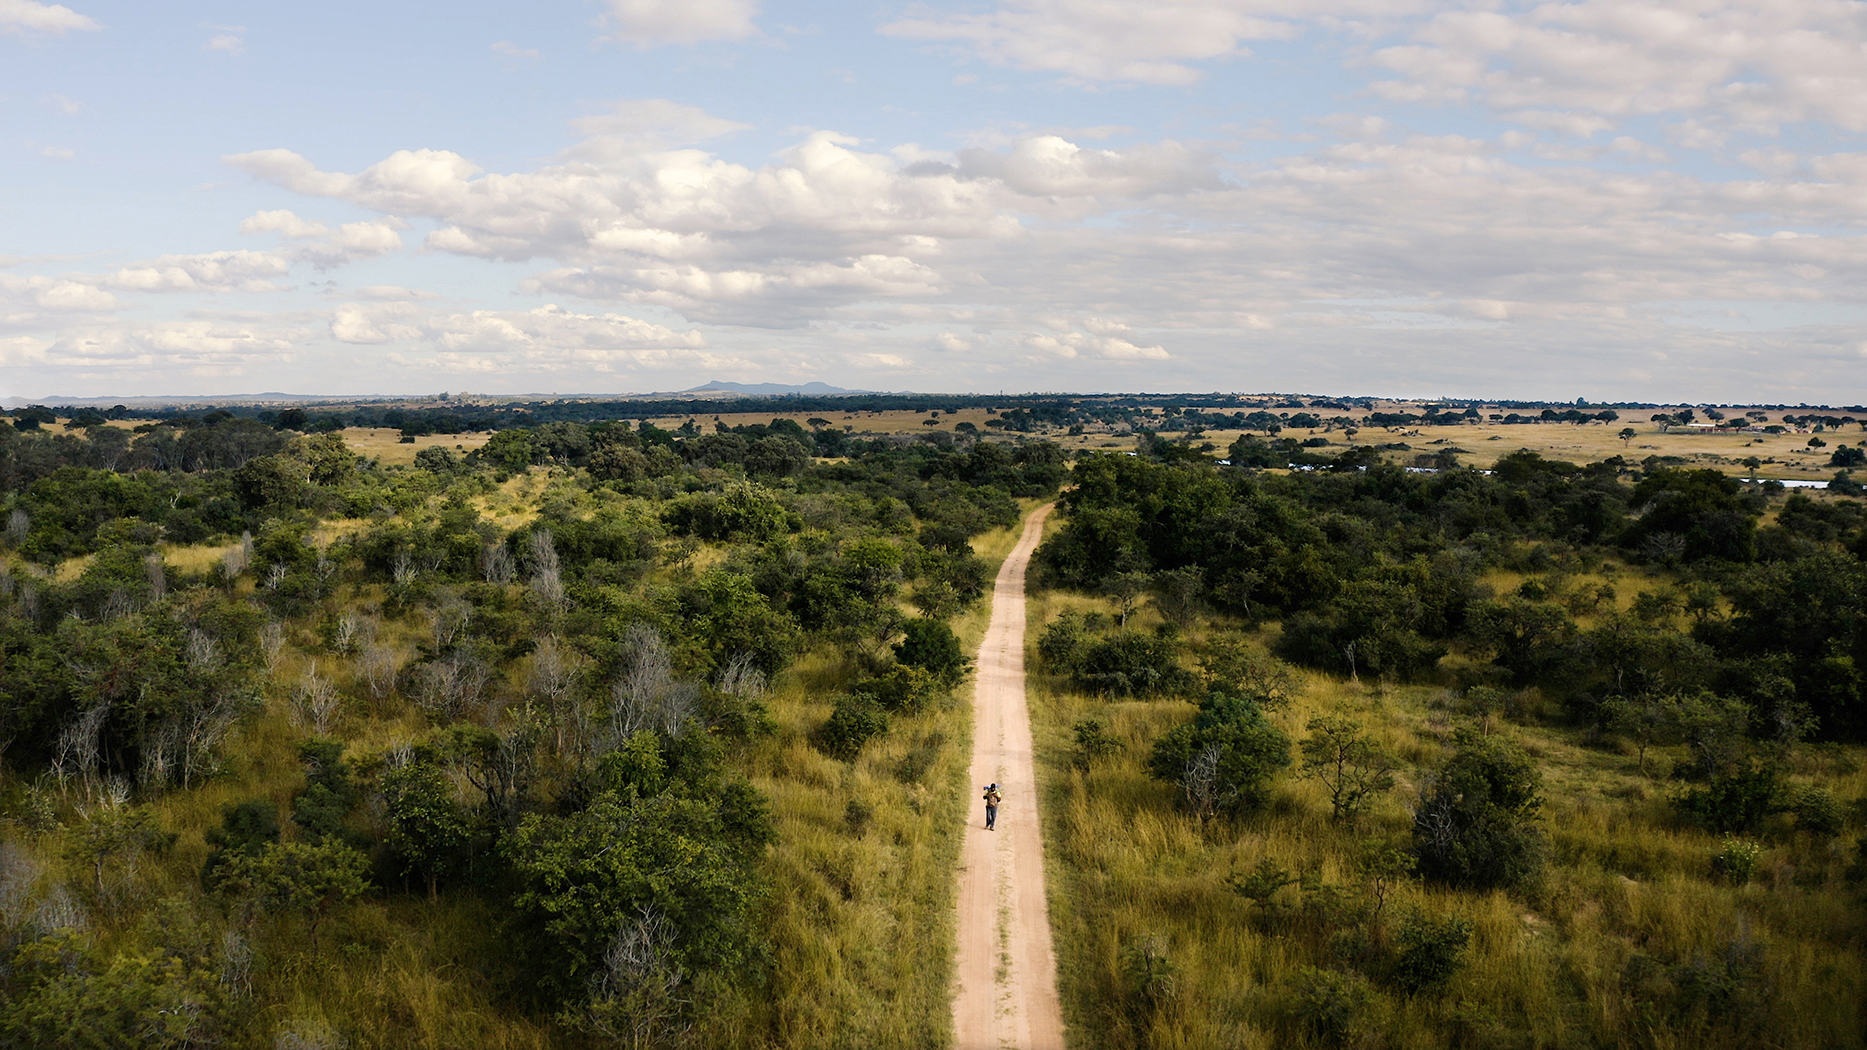 makowa zimbabwe walk